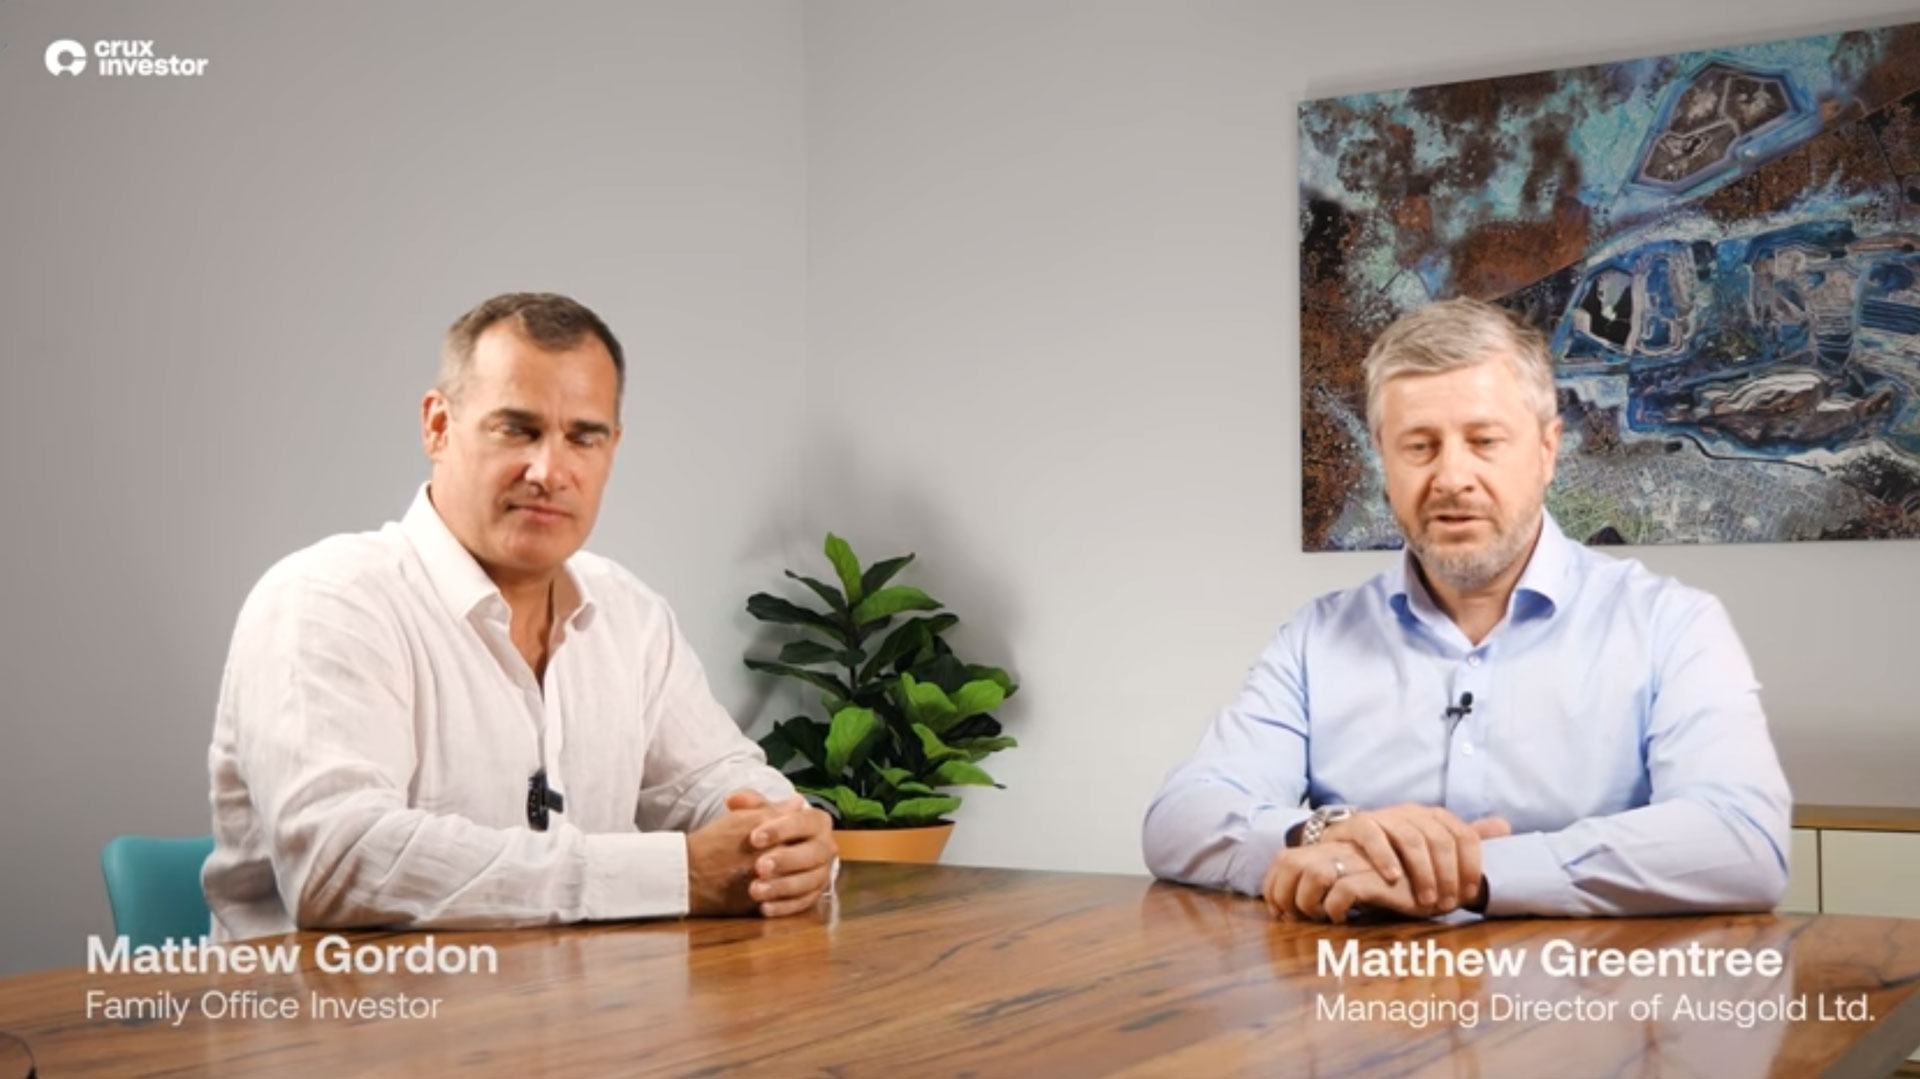 Ausgold Managing Director, Dr Matthew Greentree, CRUX Investor interview